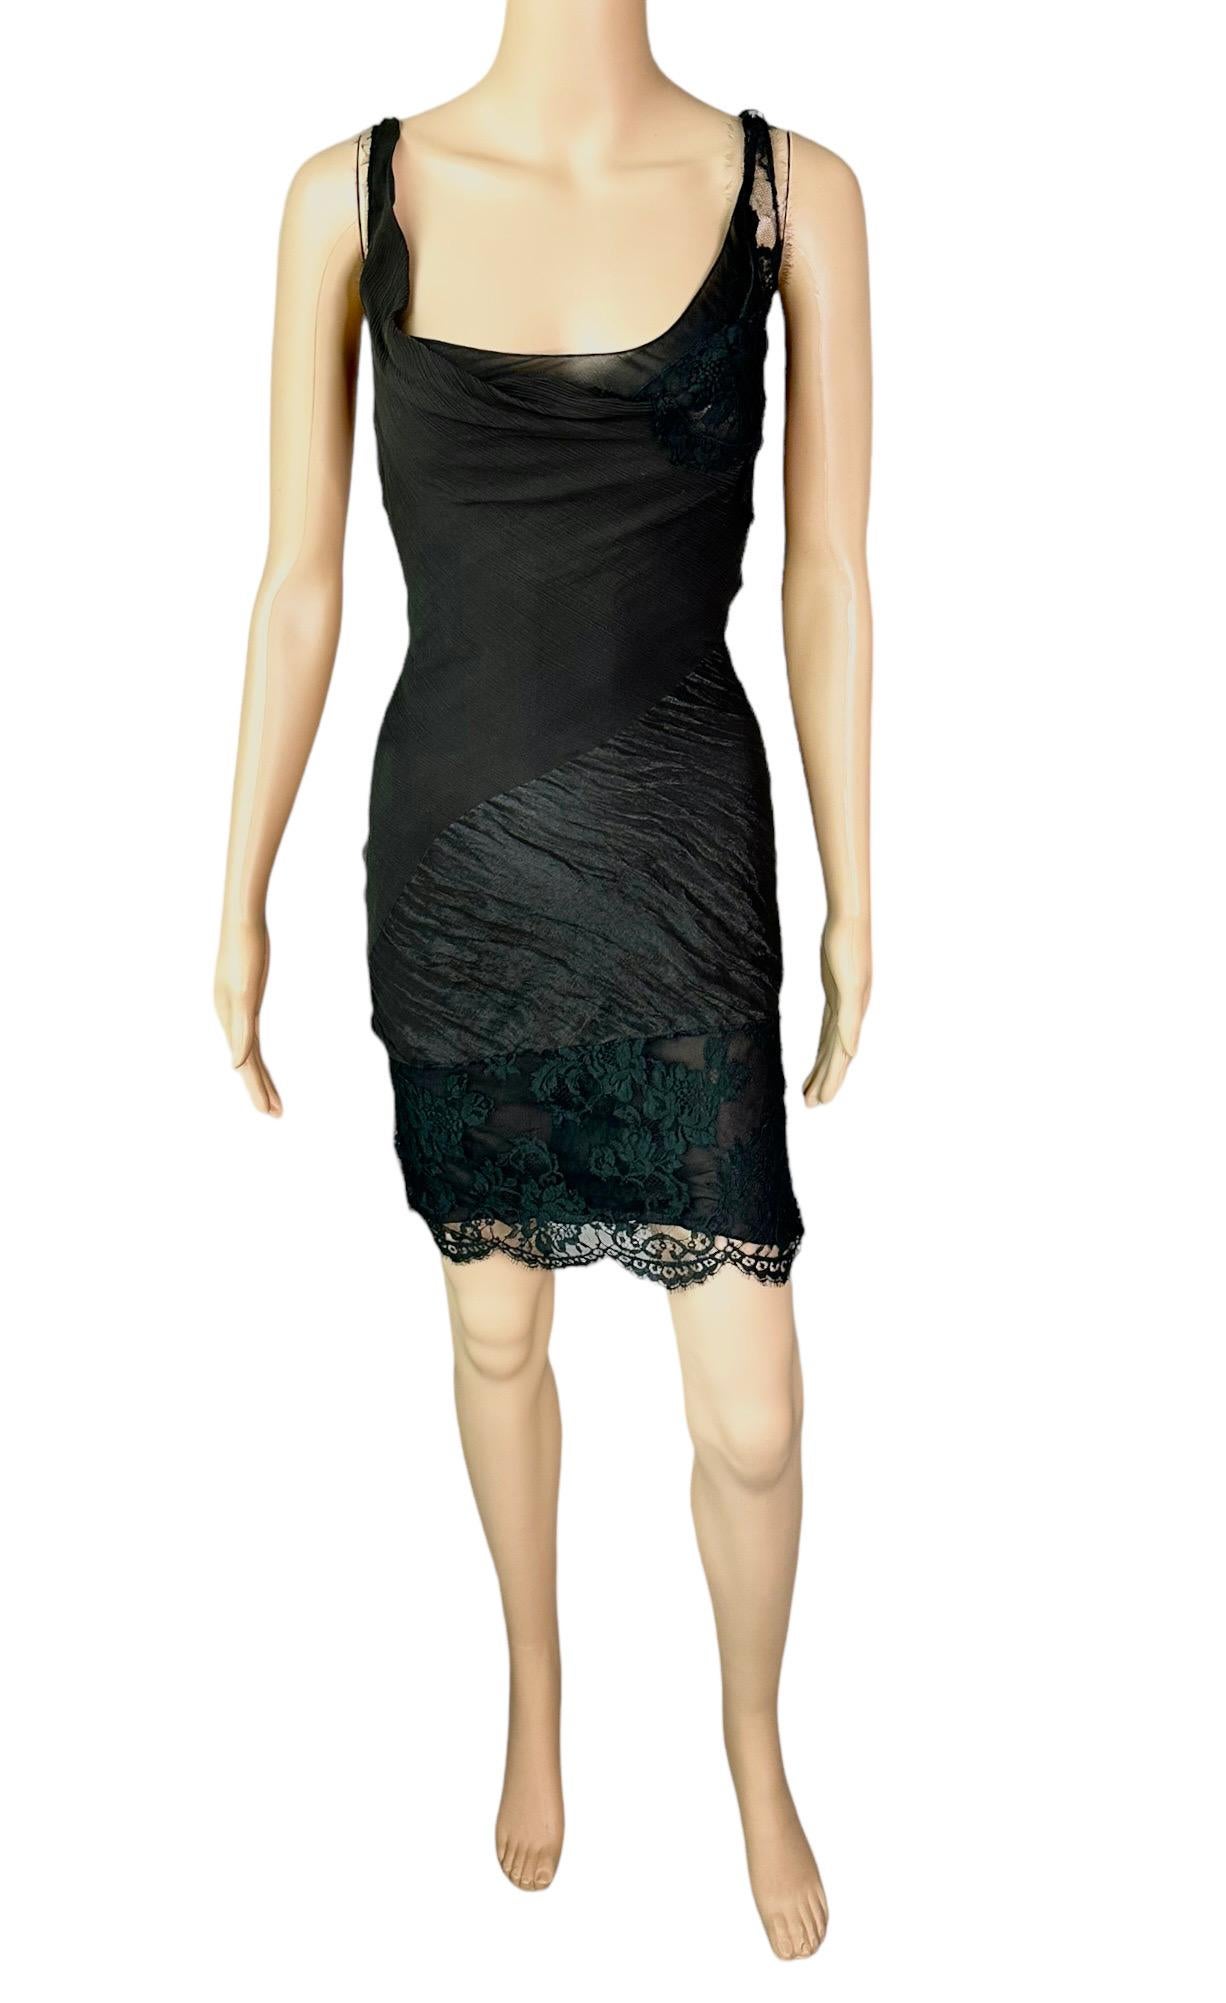 John Galliano F/W 2006 Semi-Sheer Lace Knit Slip Black 2 Piece Mini Dress 1